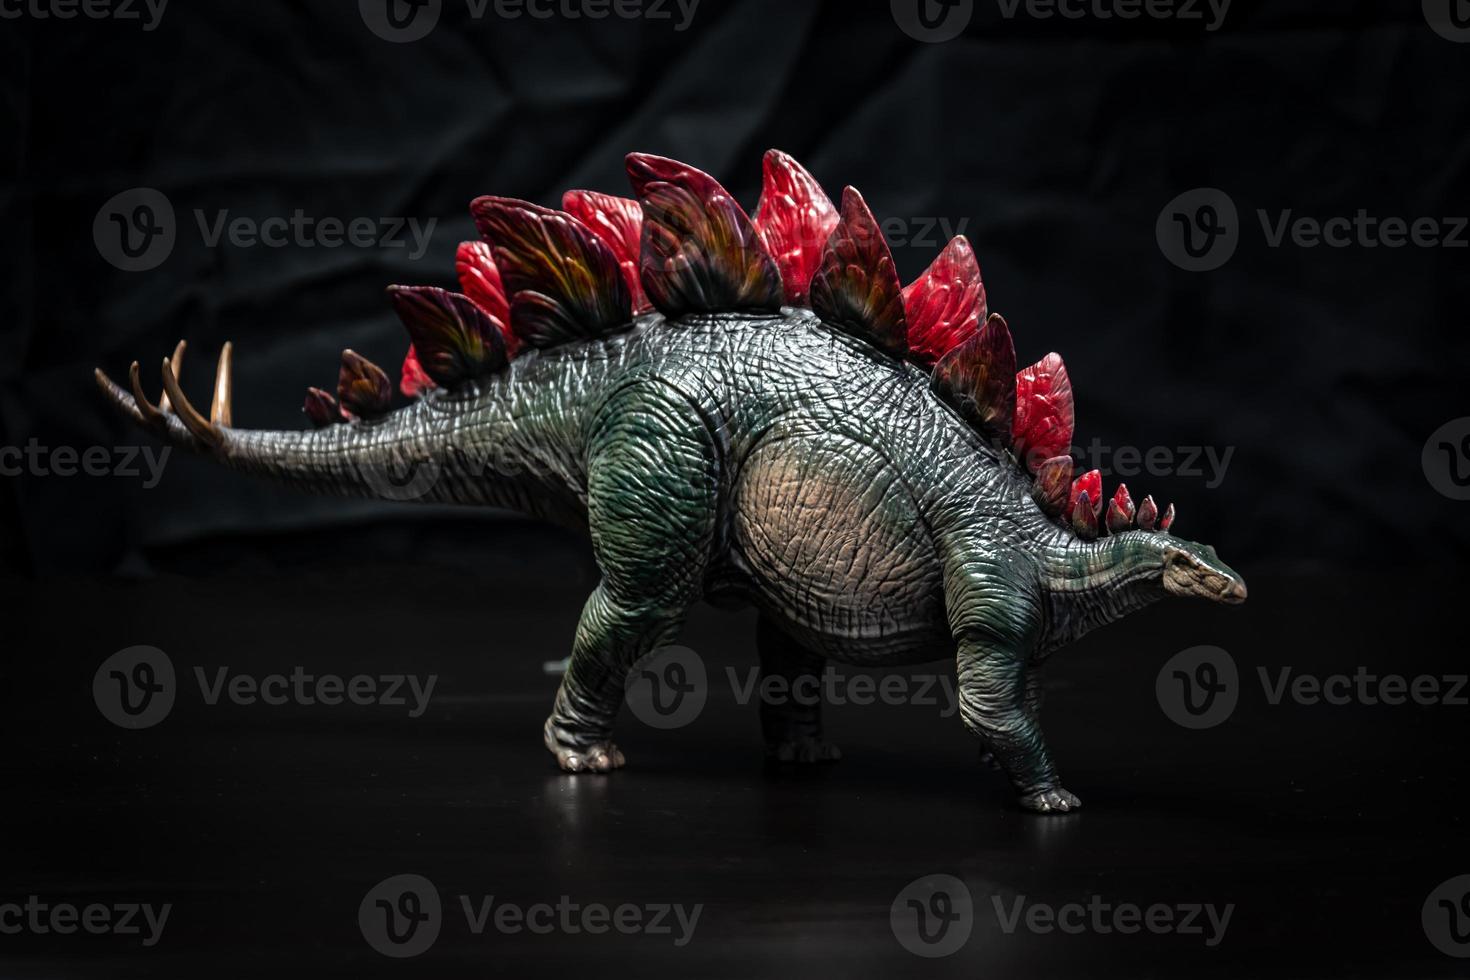 dinosaurio, estegosaurio en la oscuridad foto